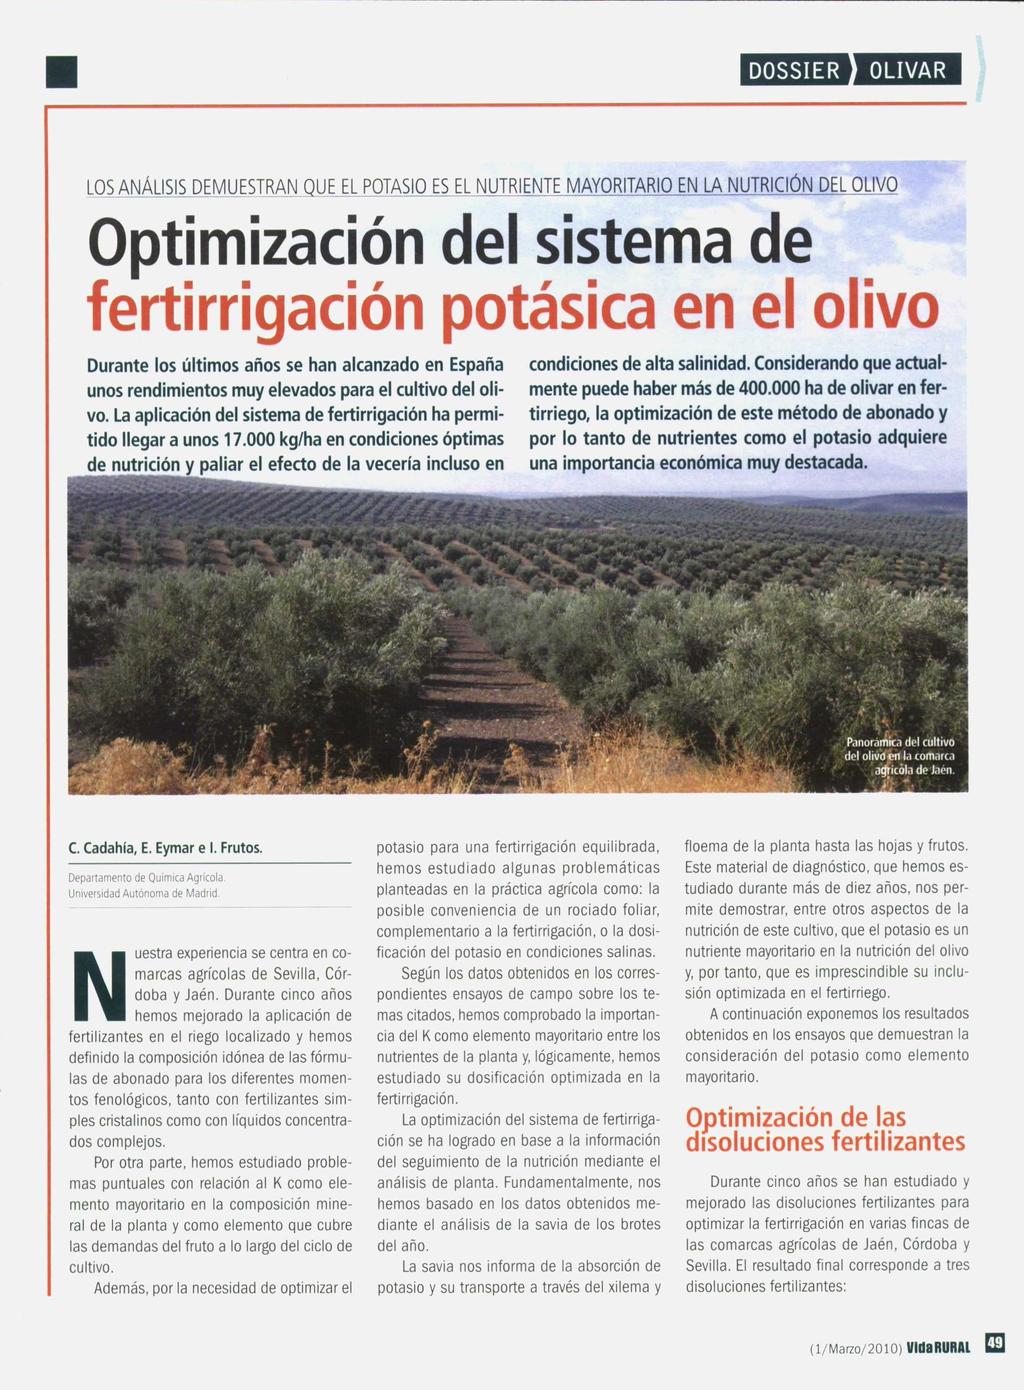 LOS ANÁLISIS DEMUESTRAN QUE EL POTASIO ES EL NUTRIENTE MAYORITARIO EN LA NUTRICIÓN DEL OLIVO Optimización del sistema de fertirrigación potásica en el olivo Durante los últimos años se han alcanzado